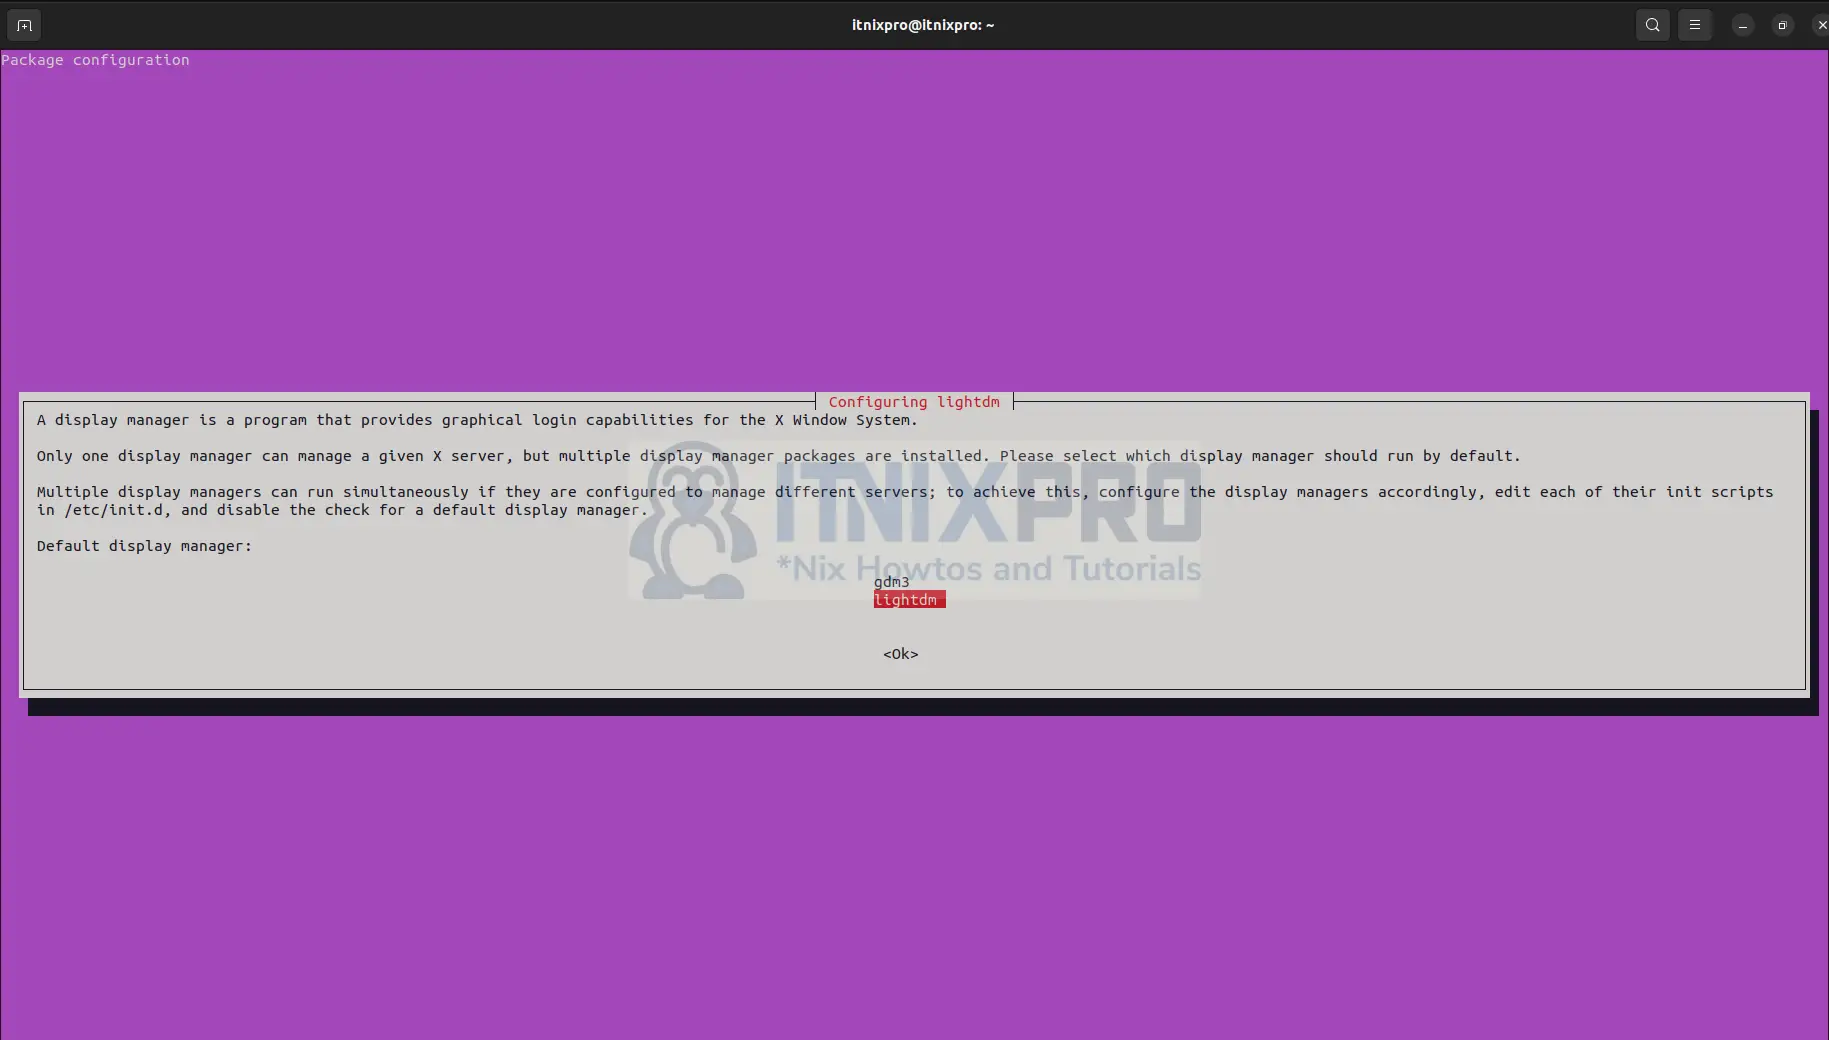 Install Pantheon Desktop Environment on Ubuntu 22.04